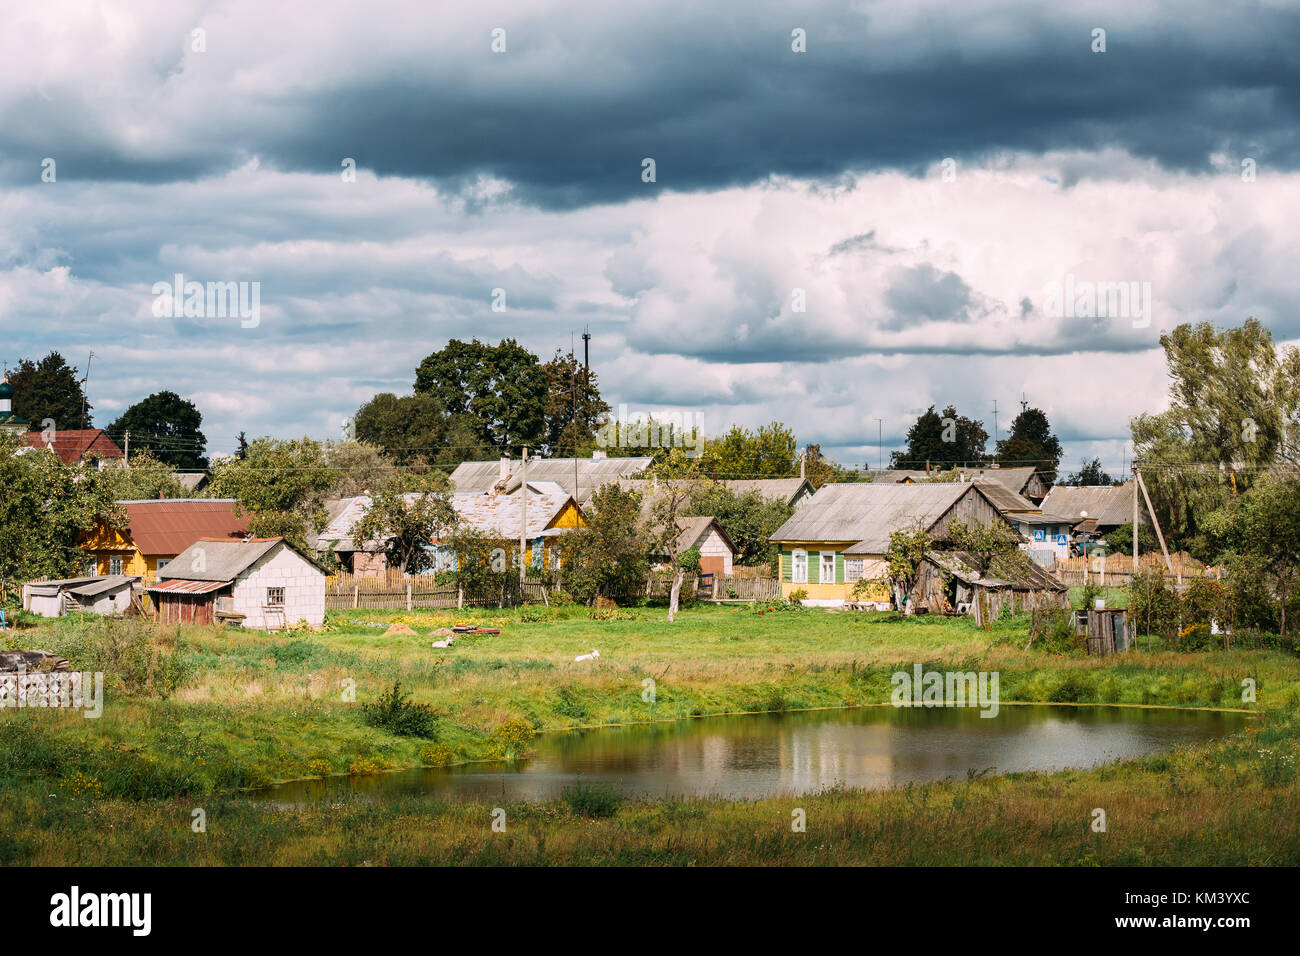 Mir Belarus Landschaft Von Dorf Hauser In Mir Belarus Stockfotografie Alamy